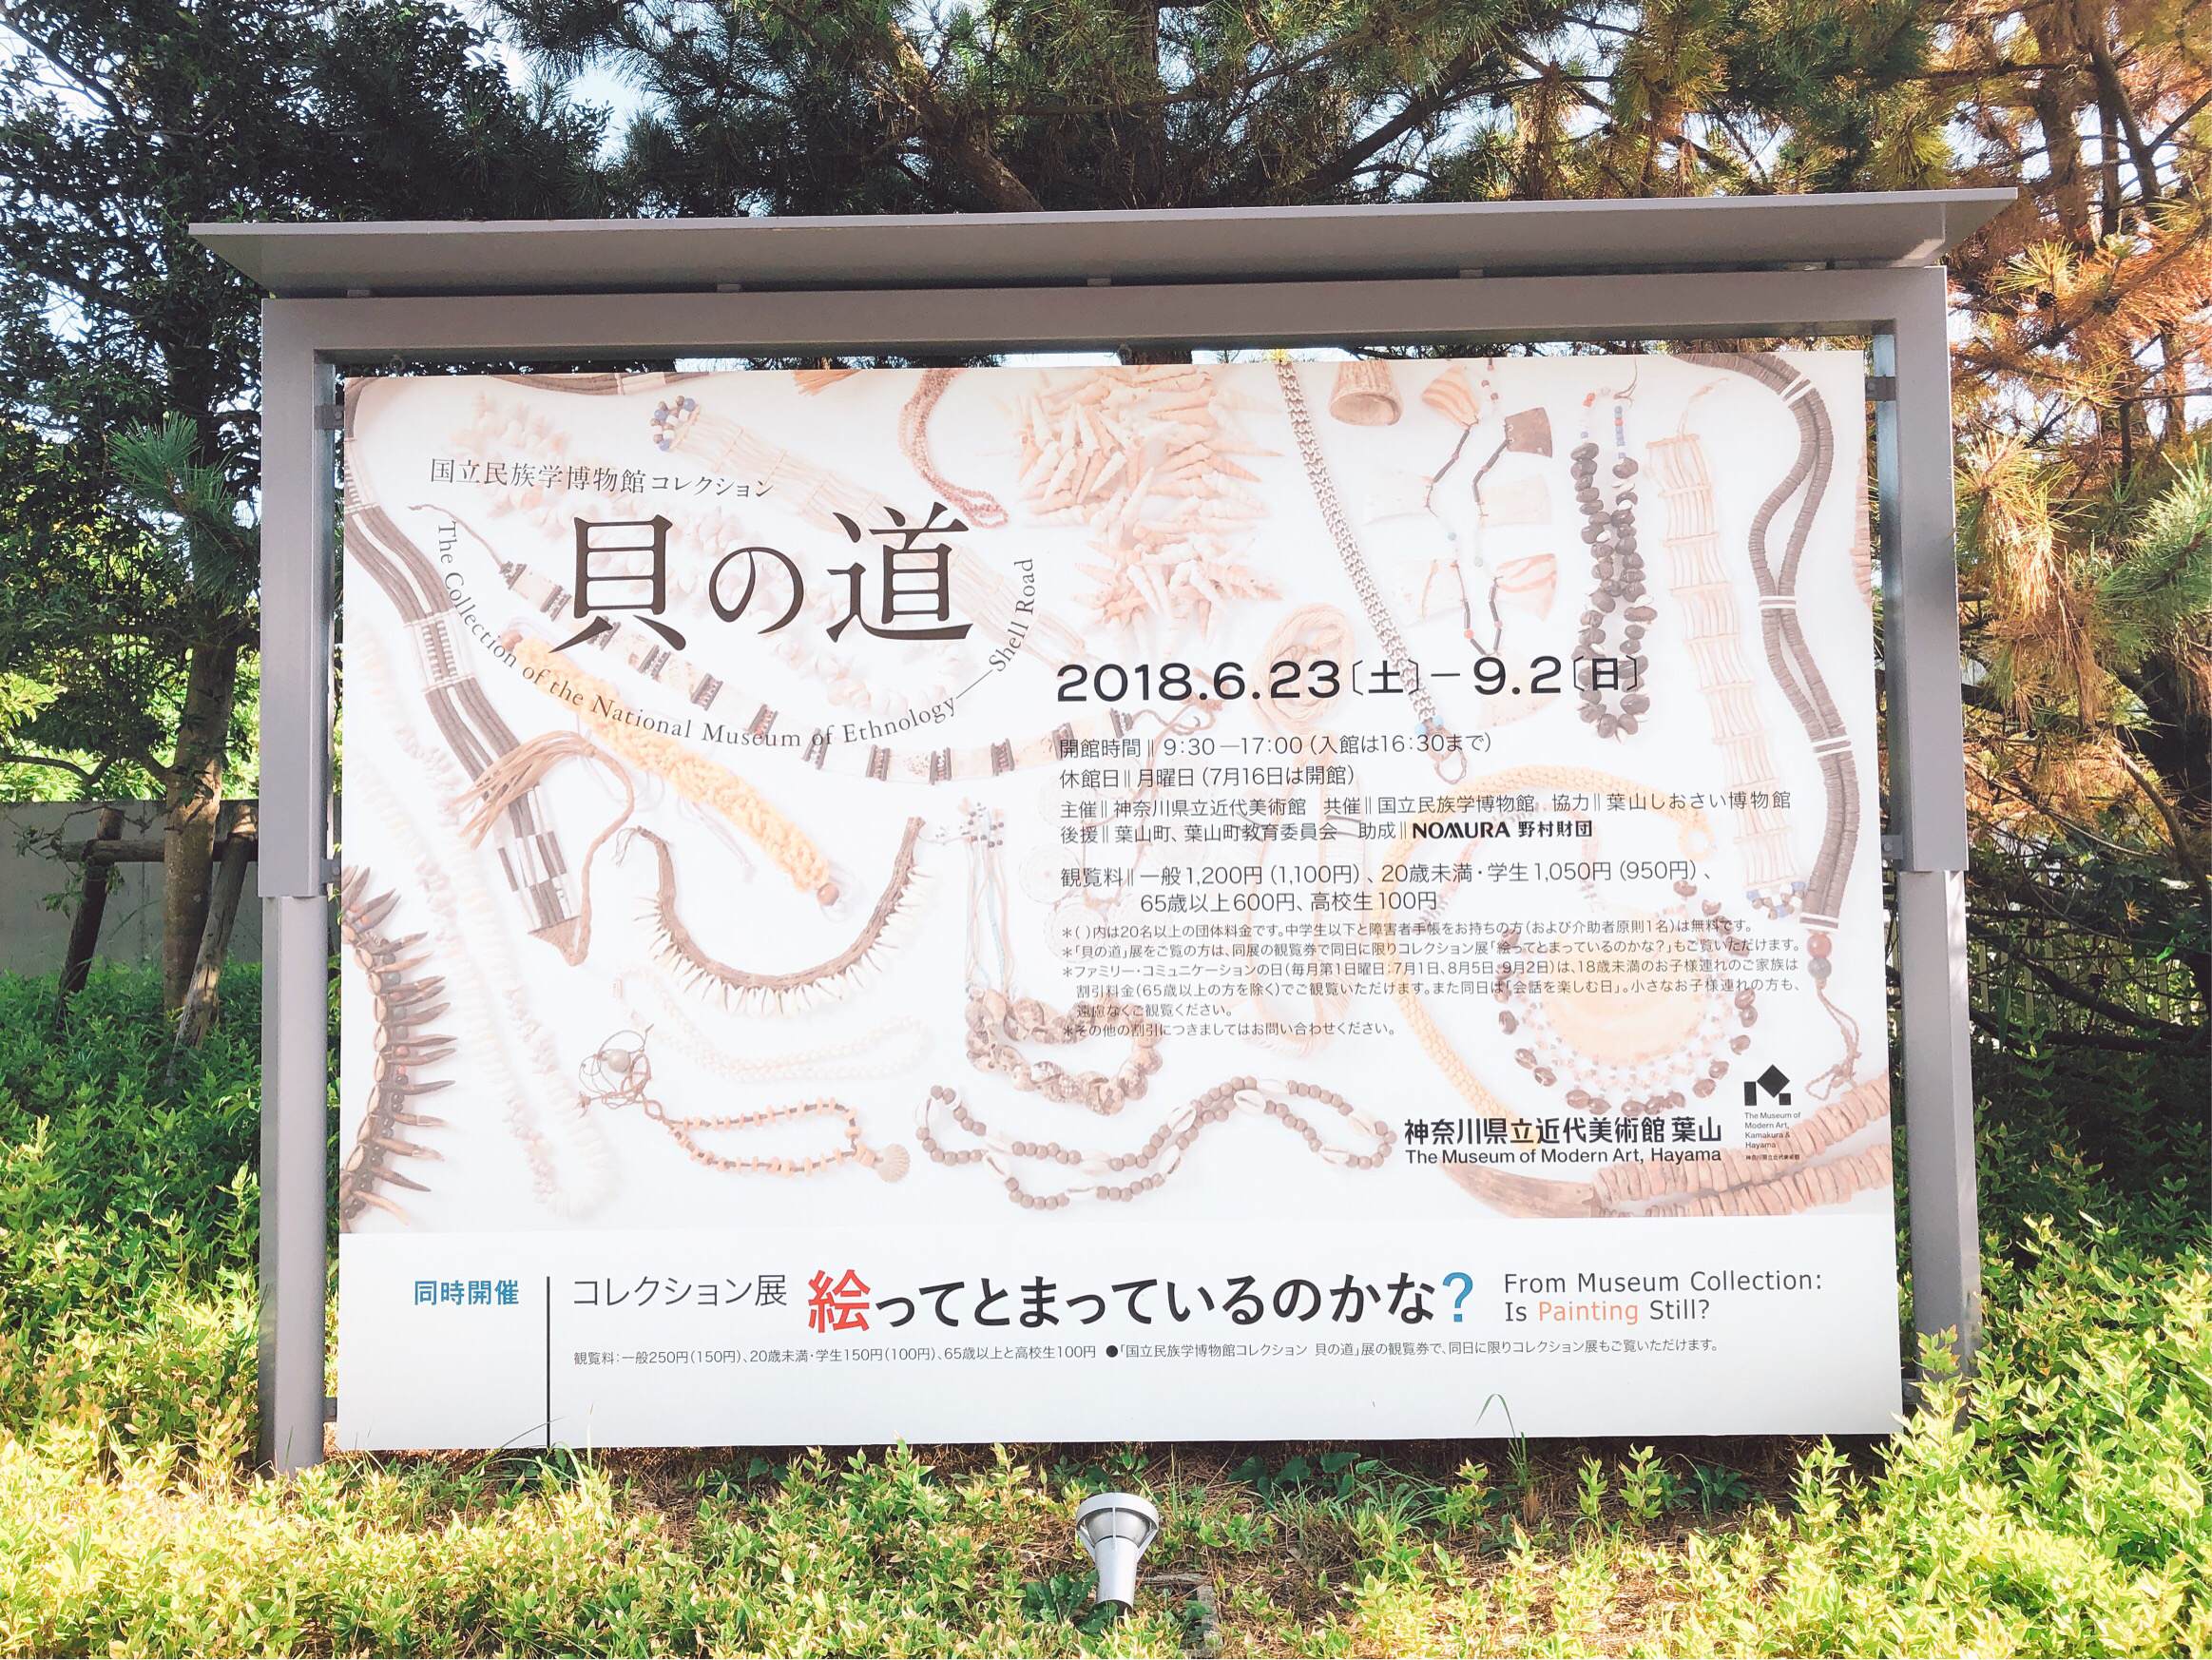 葉山美術館「貝の道」展示ポスターの写真です。2018年9月2日まで